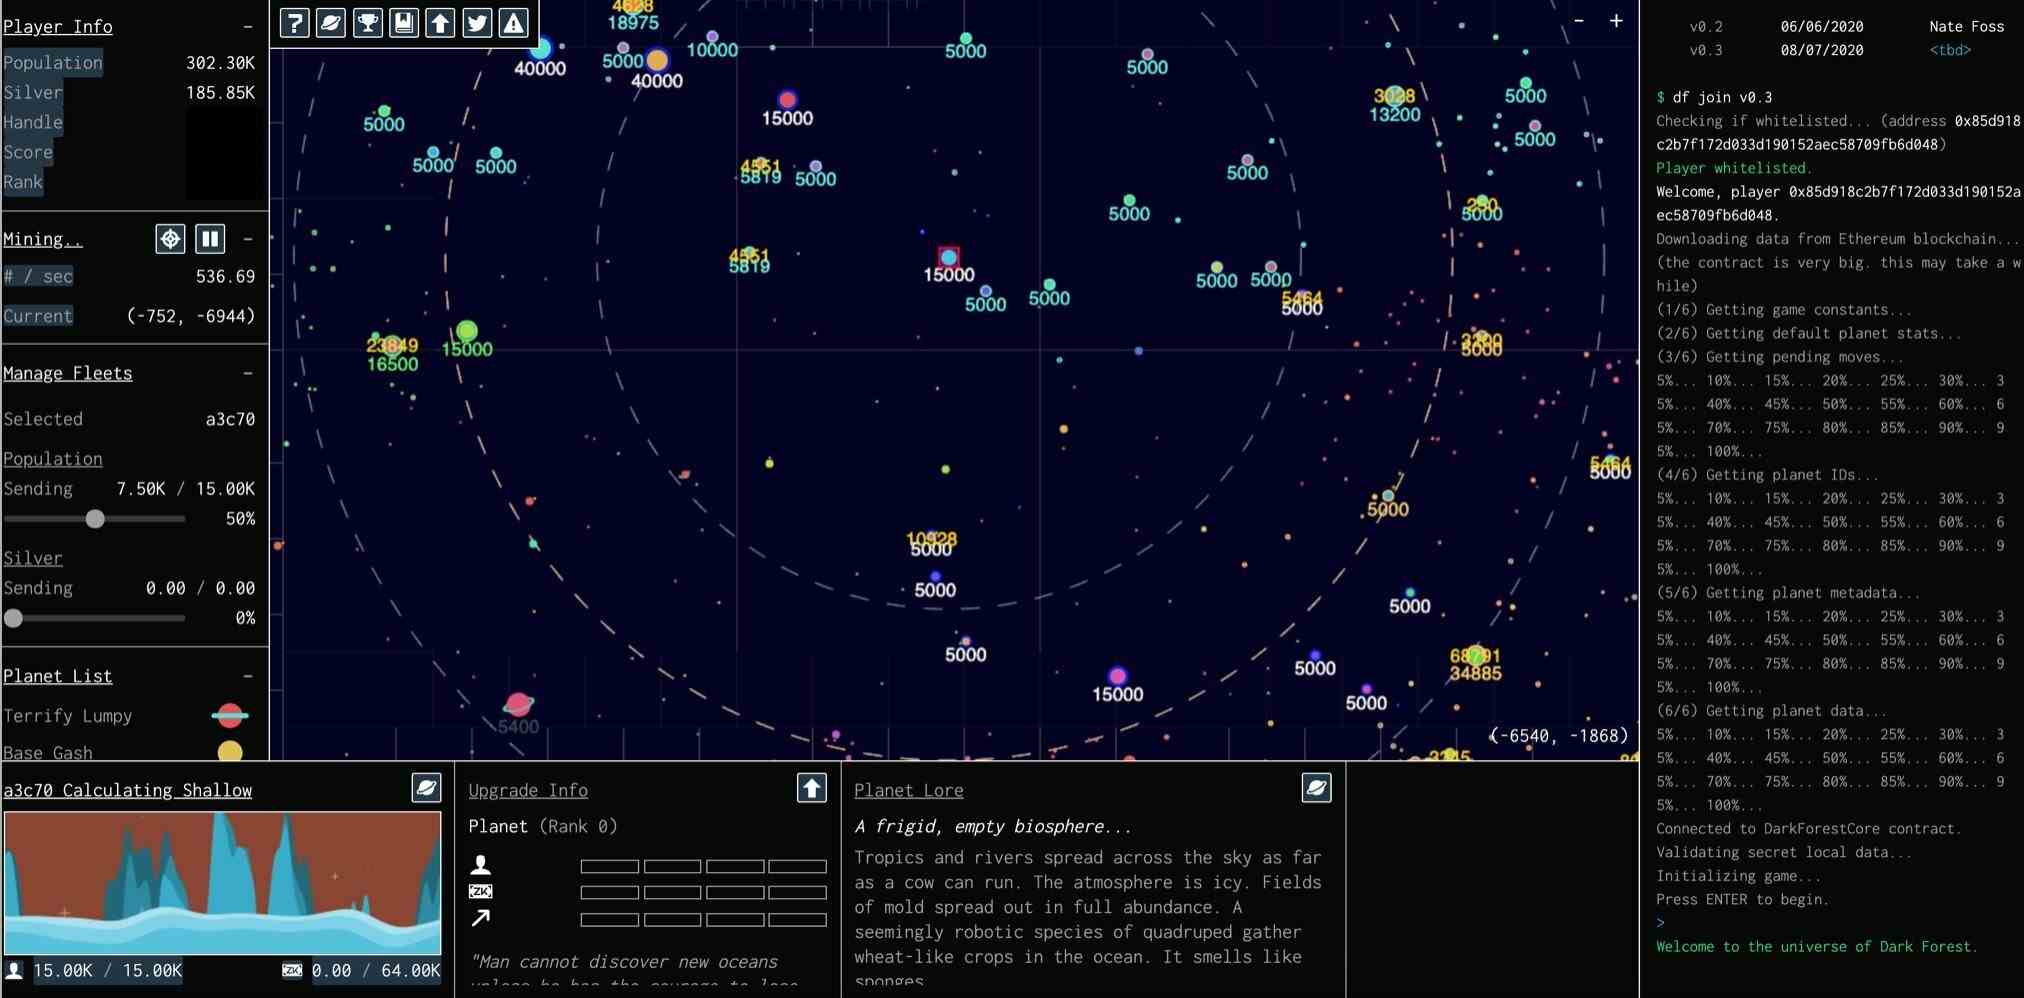 Dark Forest: Ein einzigartiges Sci-Fi-Blockchain-Spiel, das auf modernster Kryptografie basiert